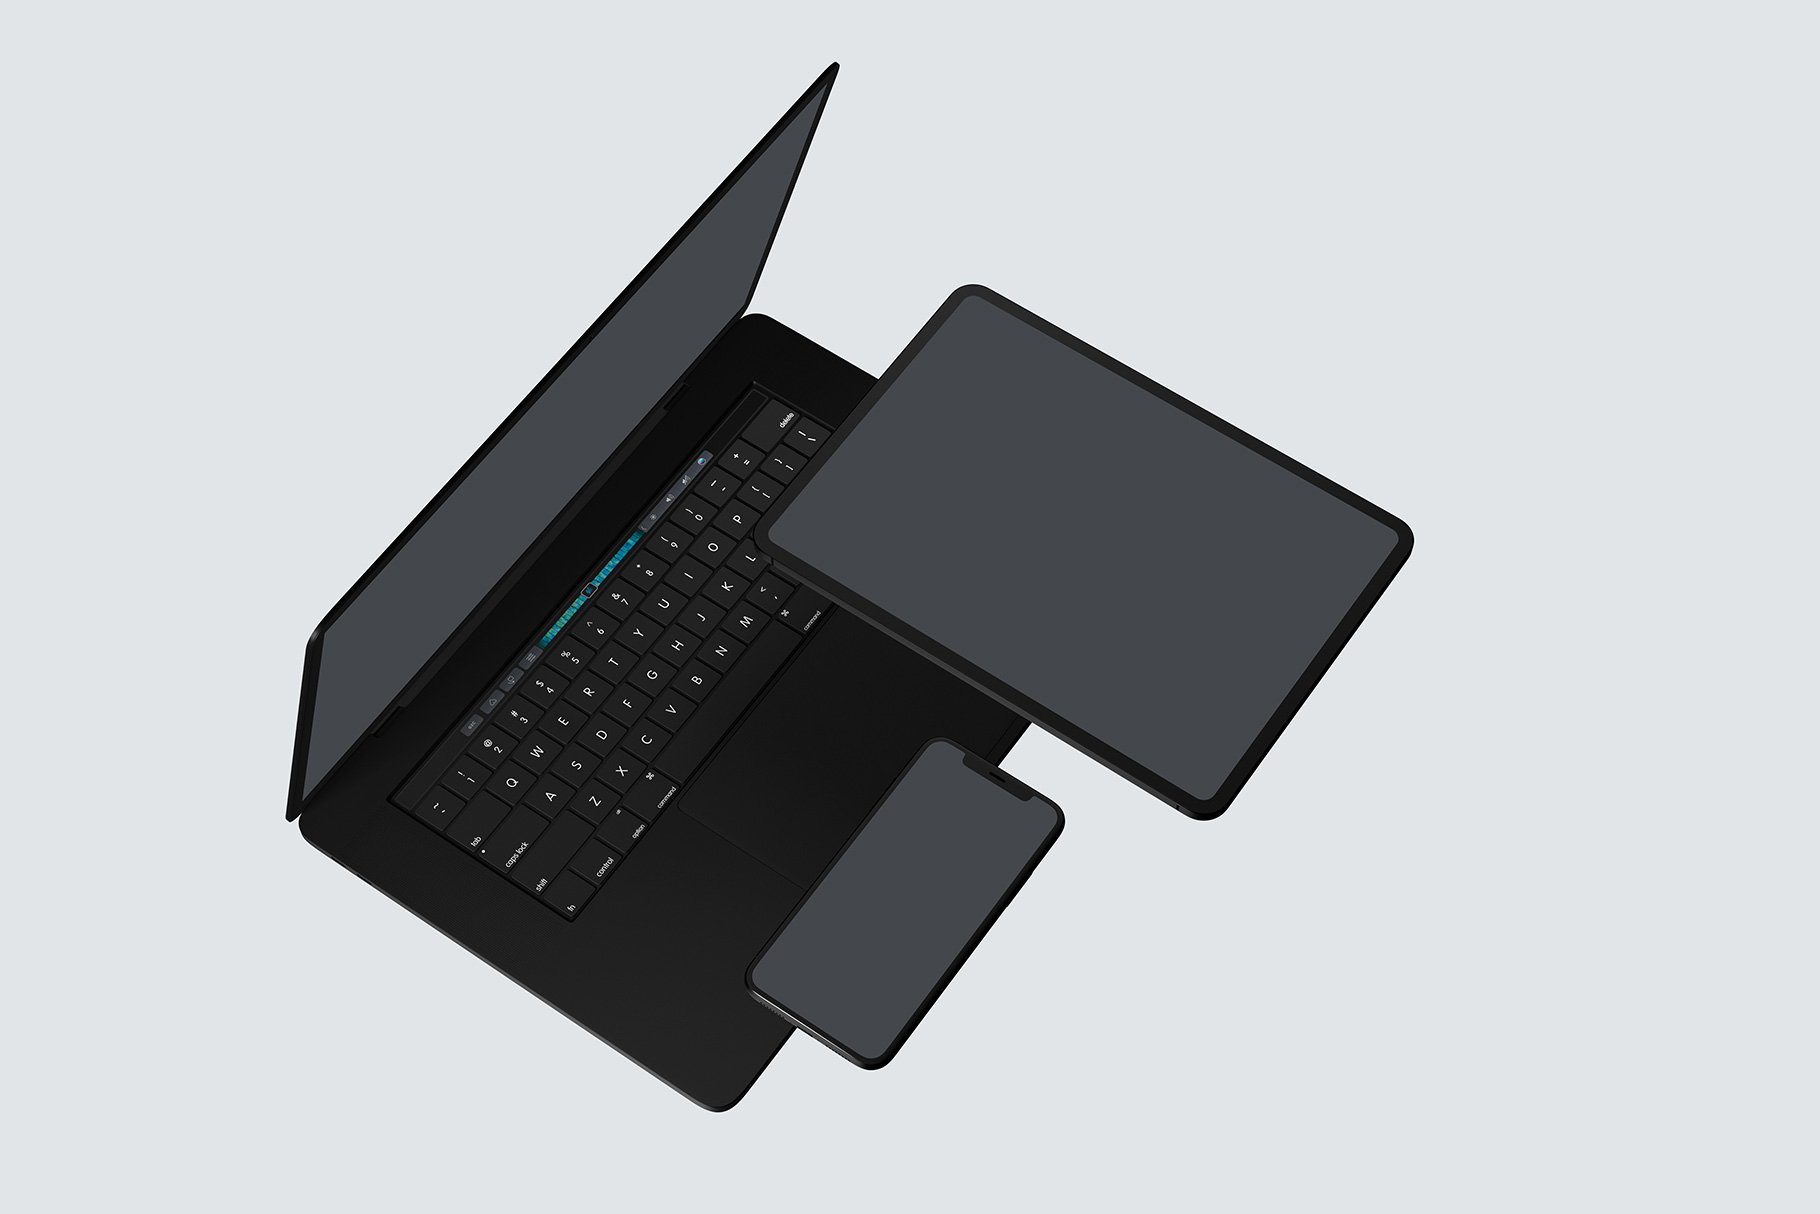 黑色系网站UI设计提案苹果设备展示样机合集 Black Apple Devices Mockup Set插图11